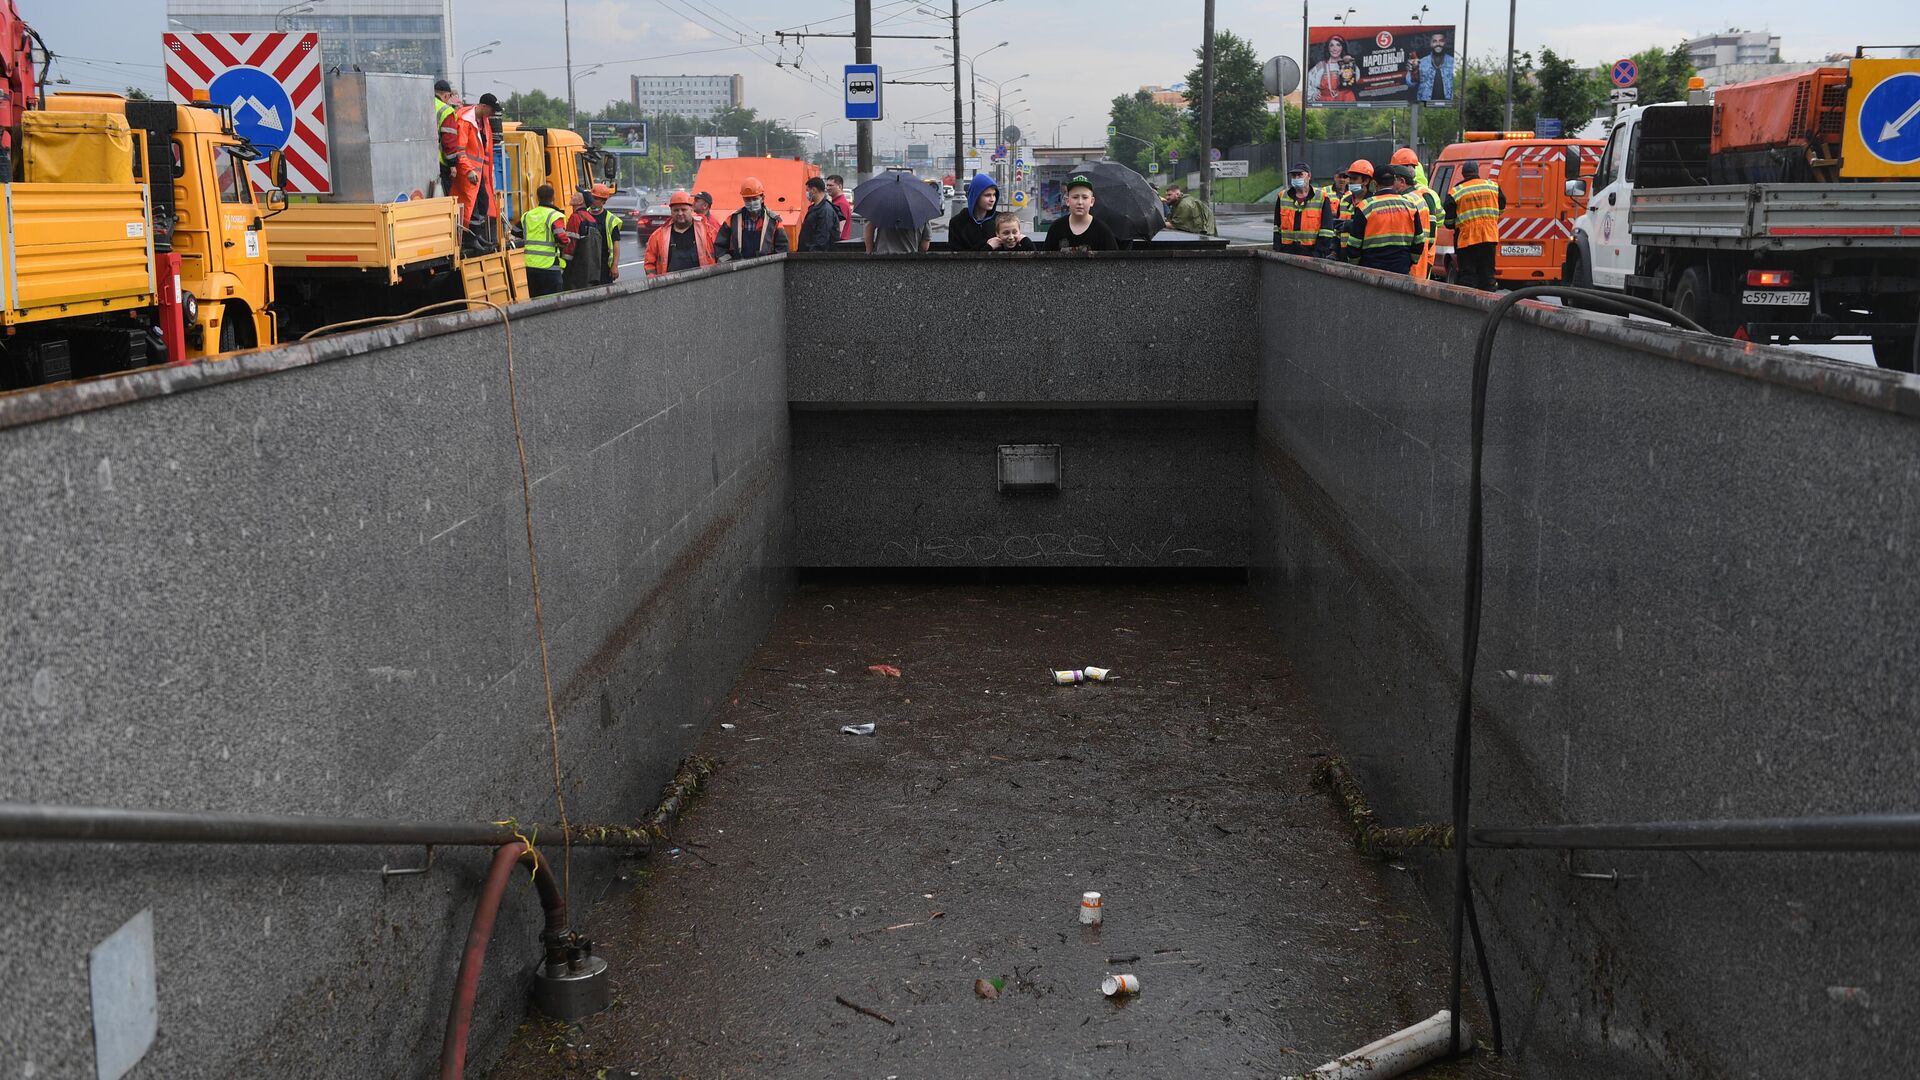 Событие 20 июня. 20.06.2020 Варшавское шоссе Москва затопило. Чертаново потоп. Потоп в Москве 20 июня 2020. Затопило Варшавское шоссе.